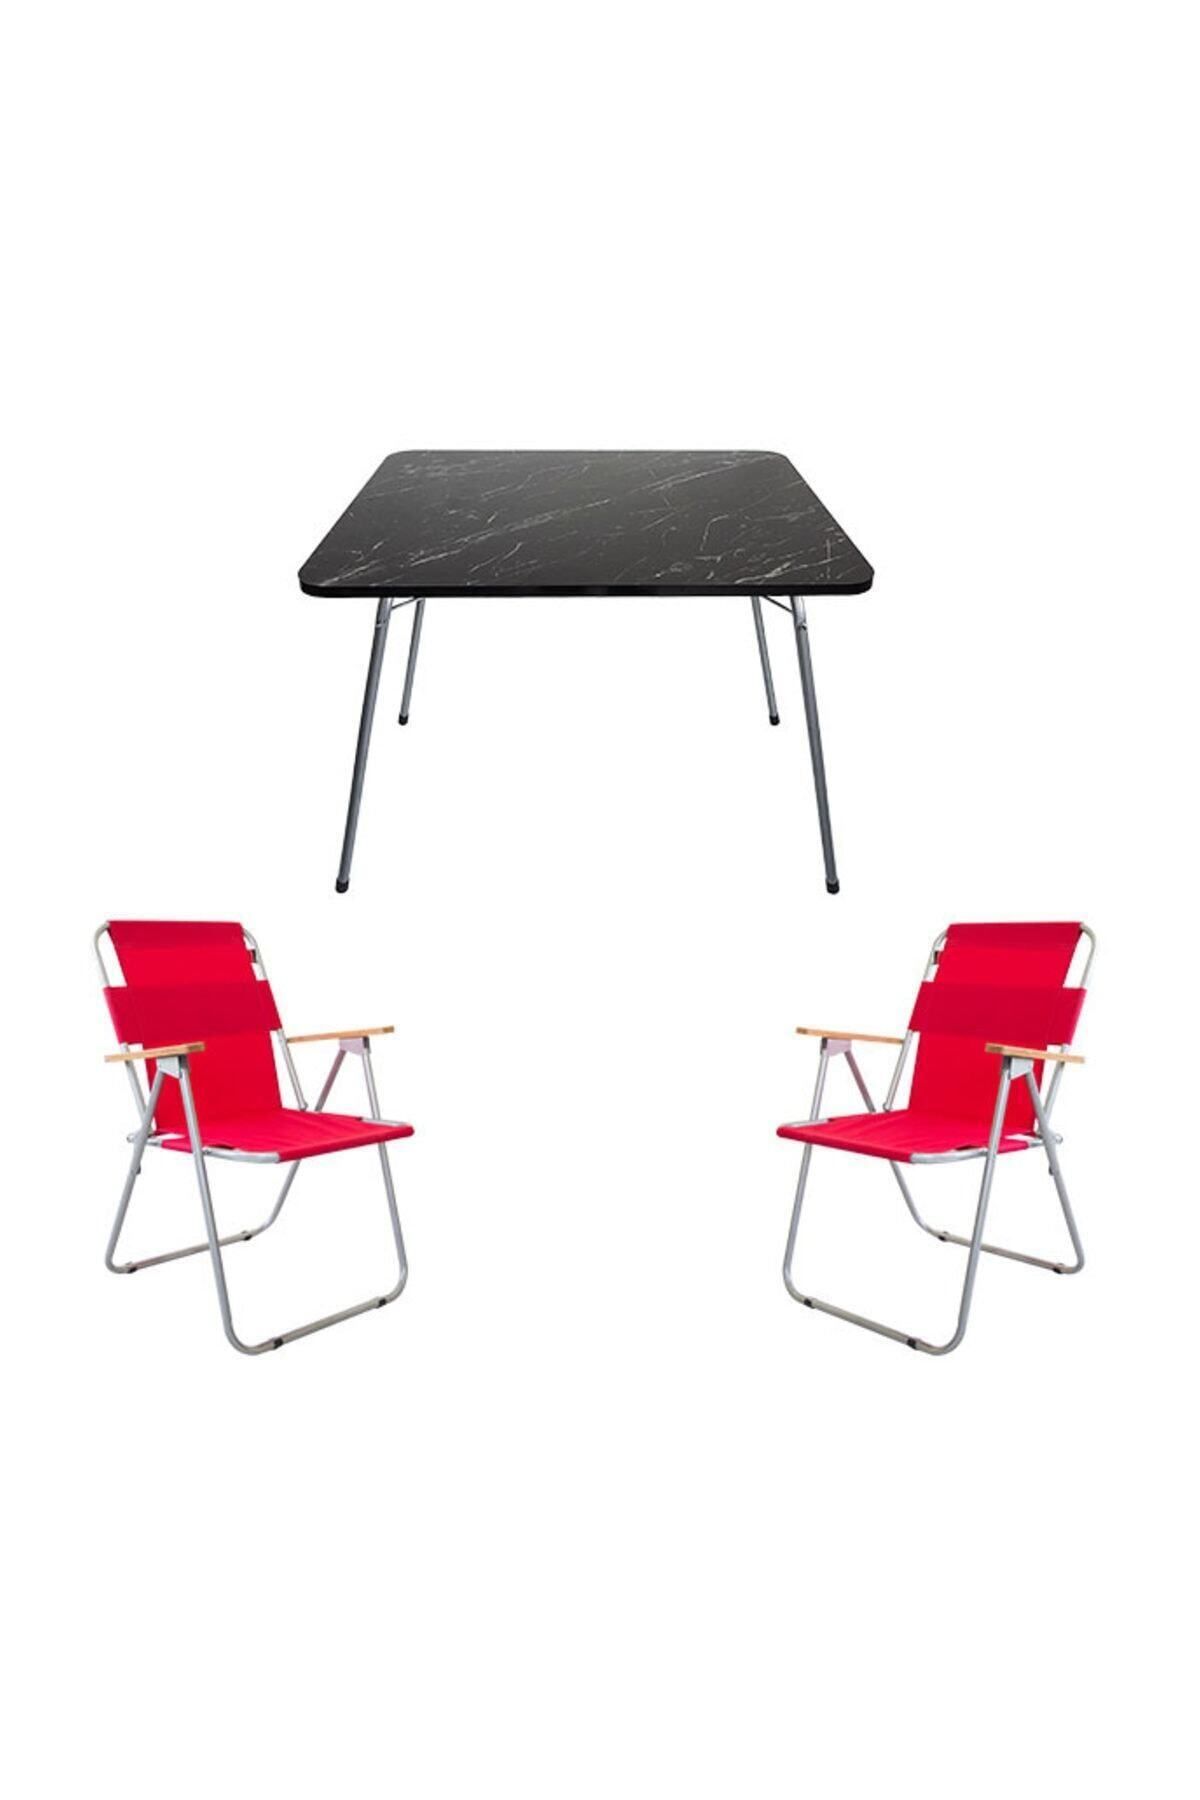 Bofigo Granit Katlanır Masa + 2 Adet Katlanır Sandalye Kırmızı